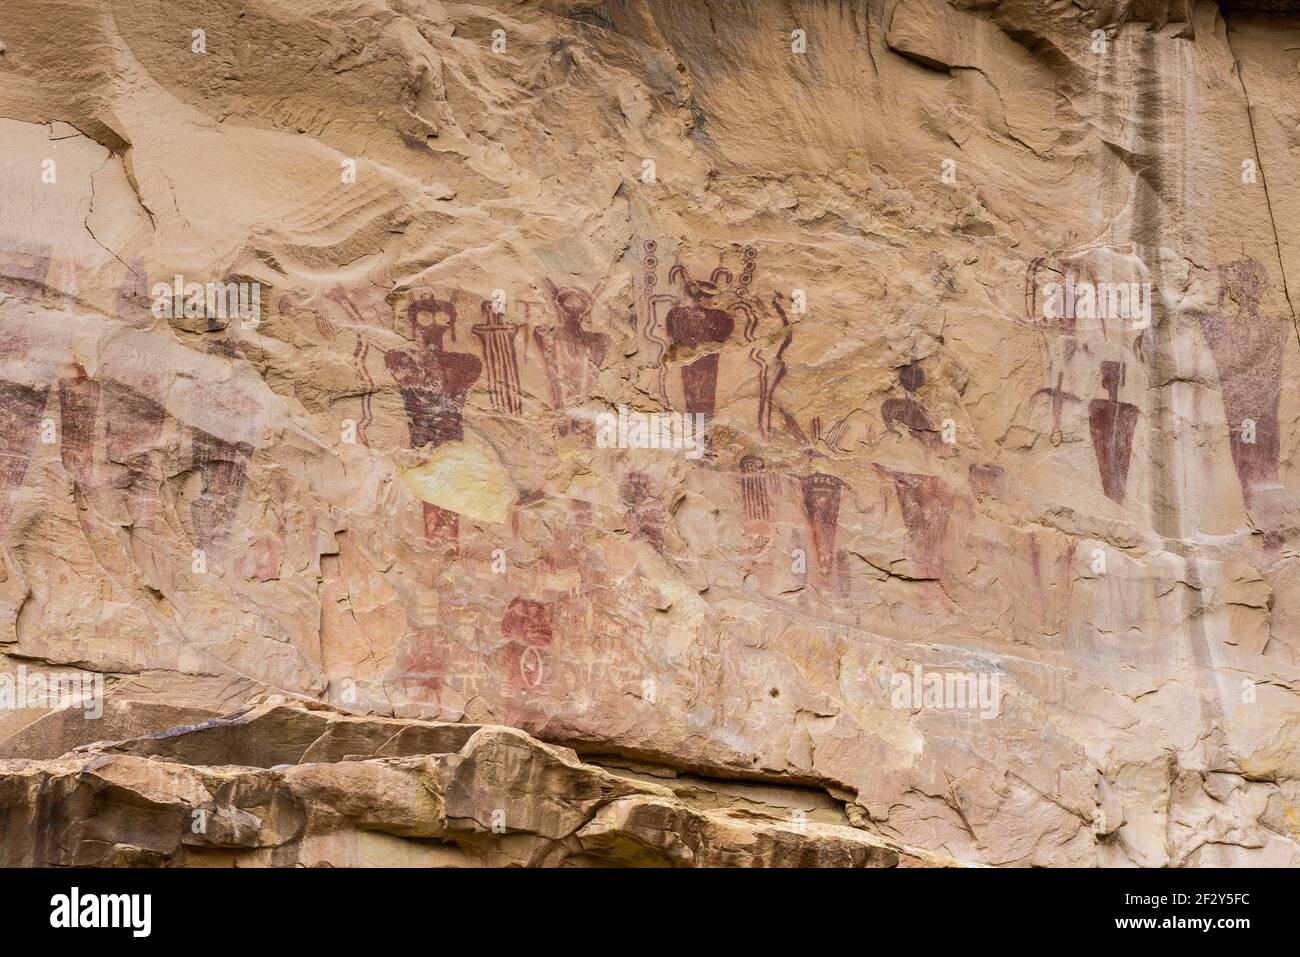 Grande pannello di pittogrammi in stile Barrier Canyon creato dai popoli nativi americani durante il periodo arcaico 1,500 a 4,000 anni fa, Sego Canyon, USA Foto Stock